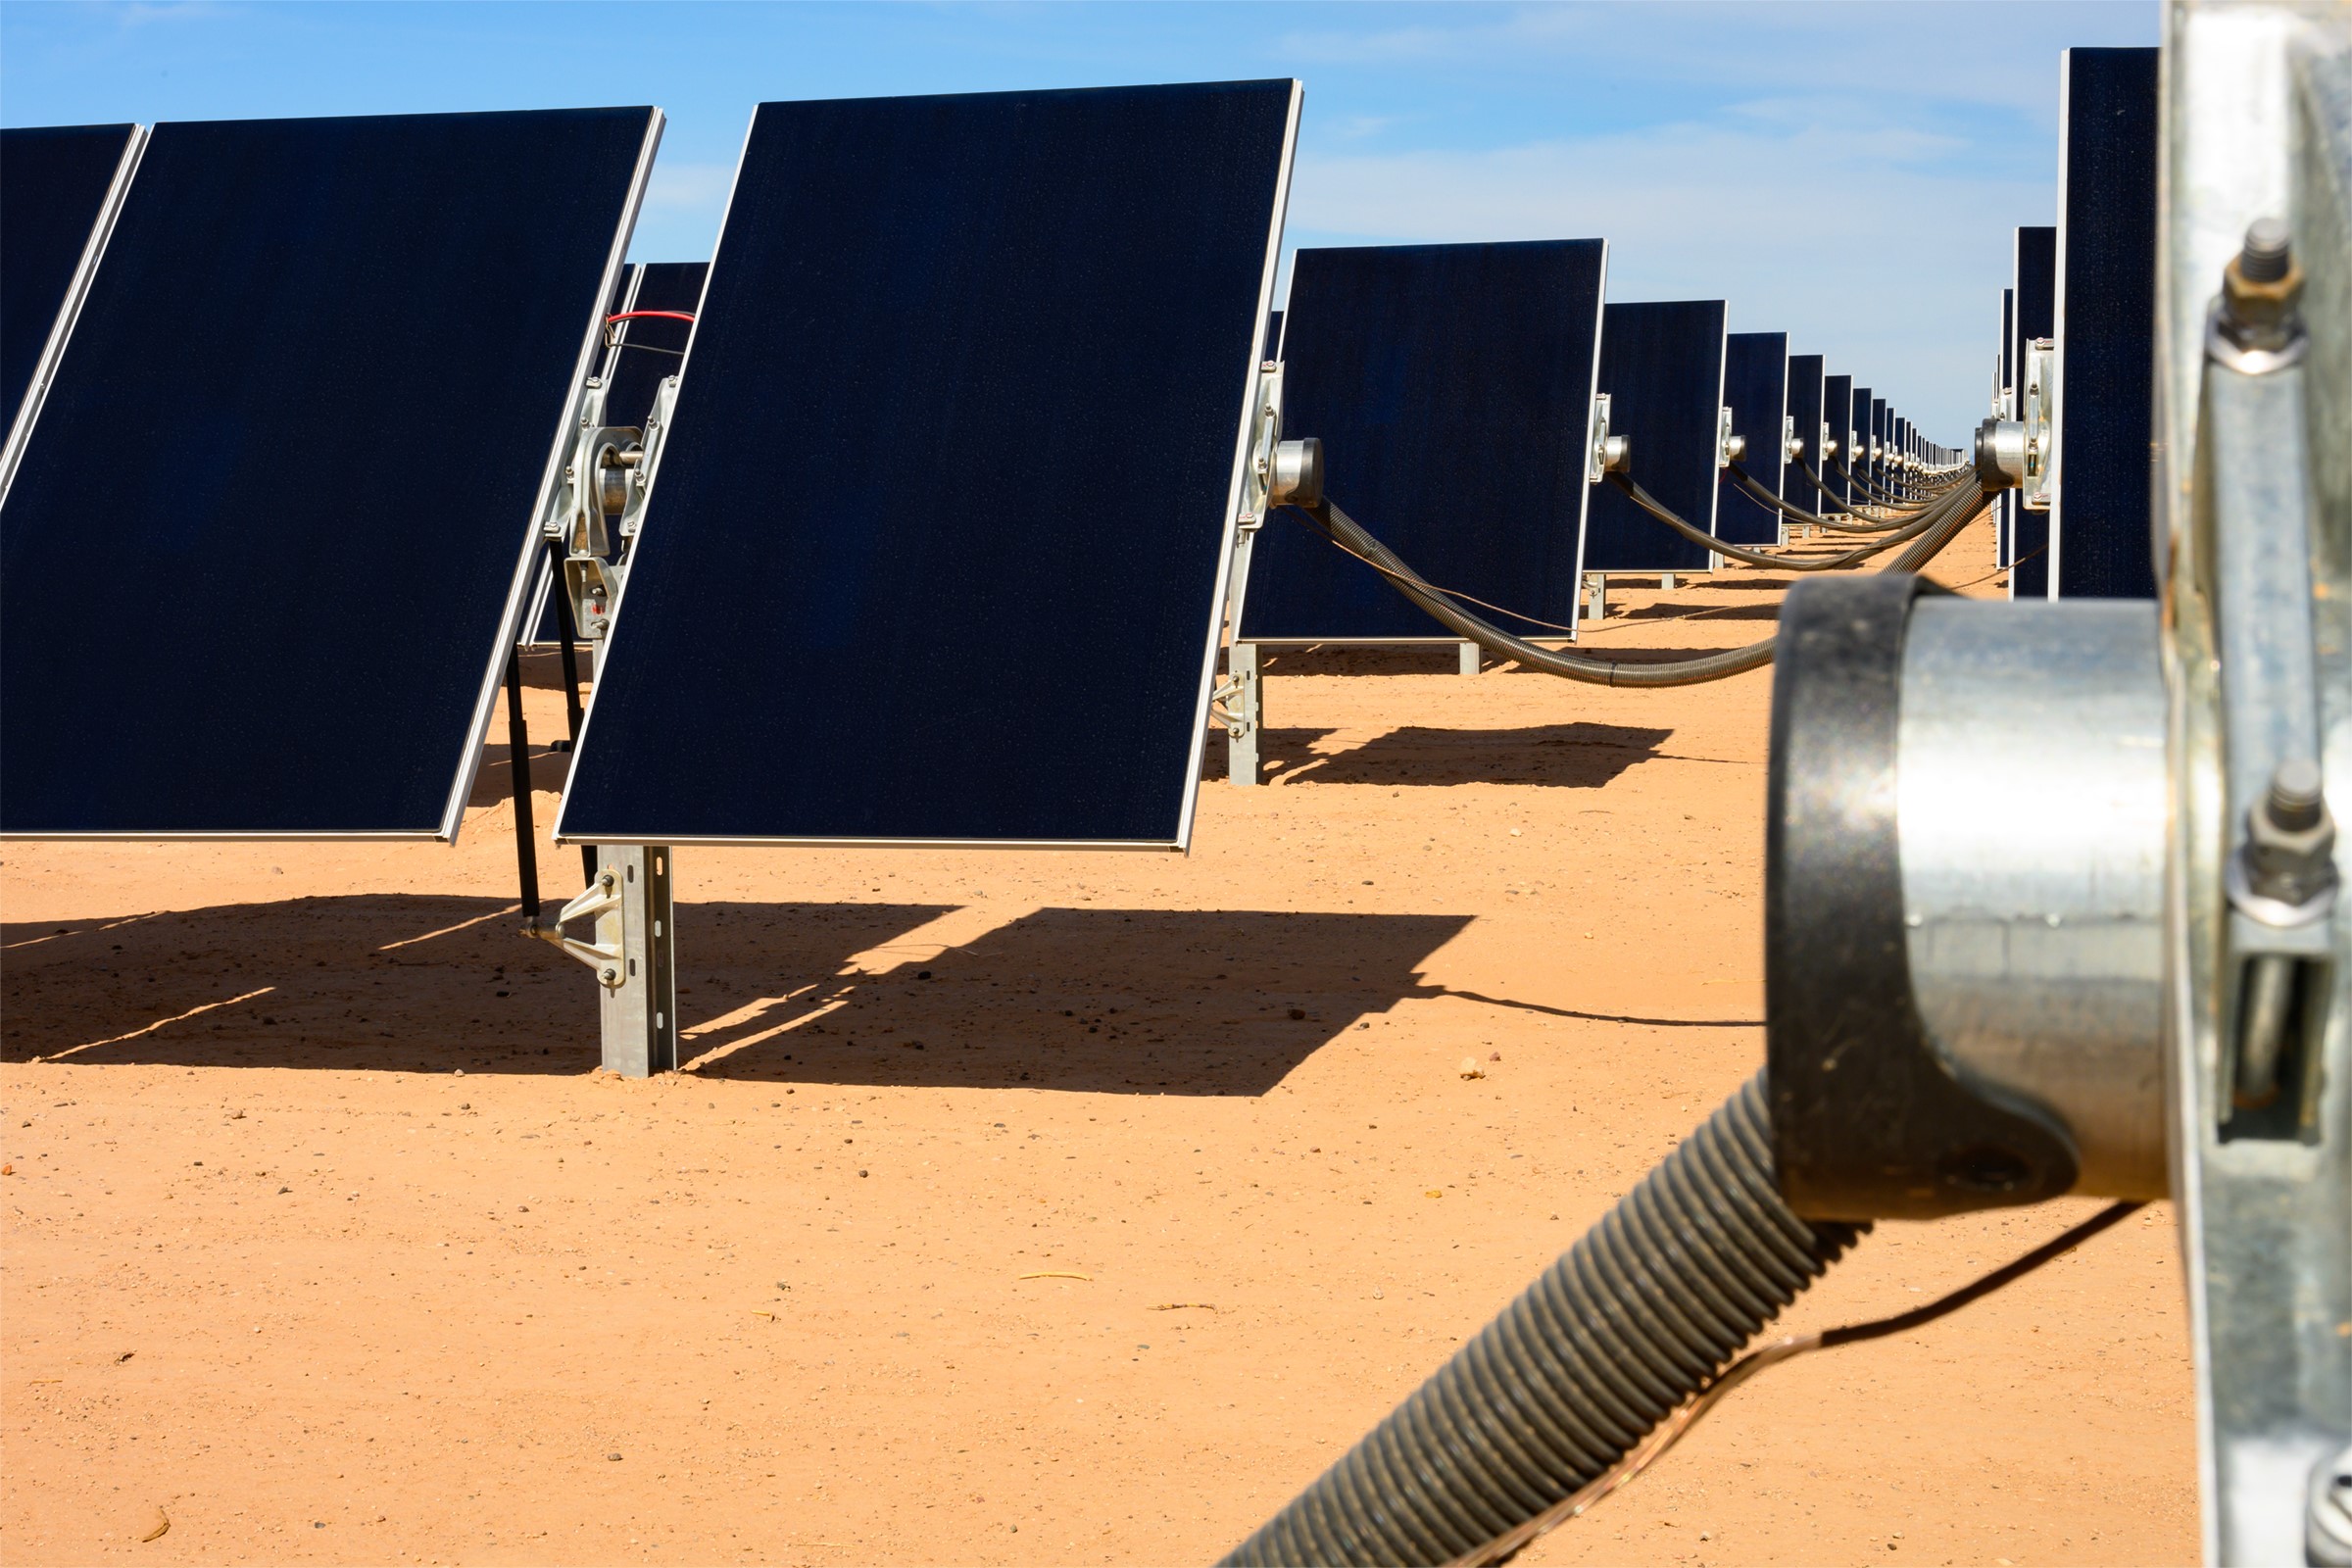 entergy-texas-to-purchase-150-megawatts-of-solar-power